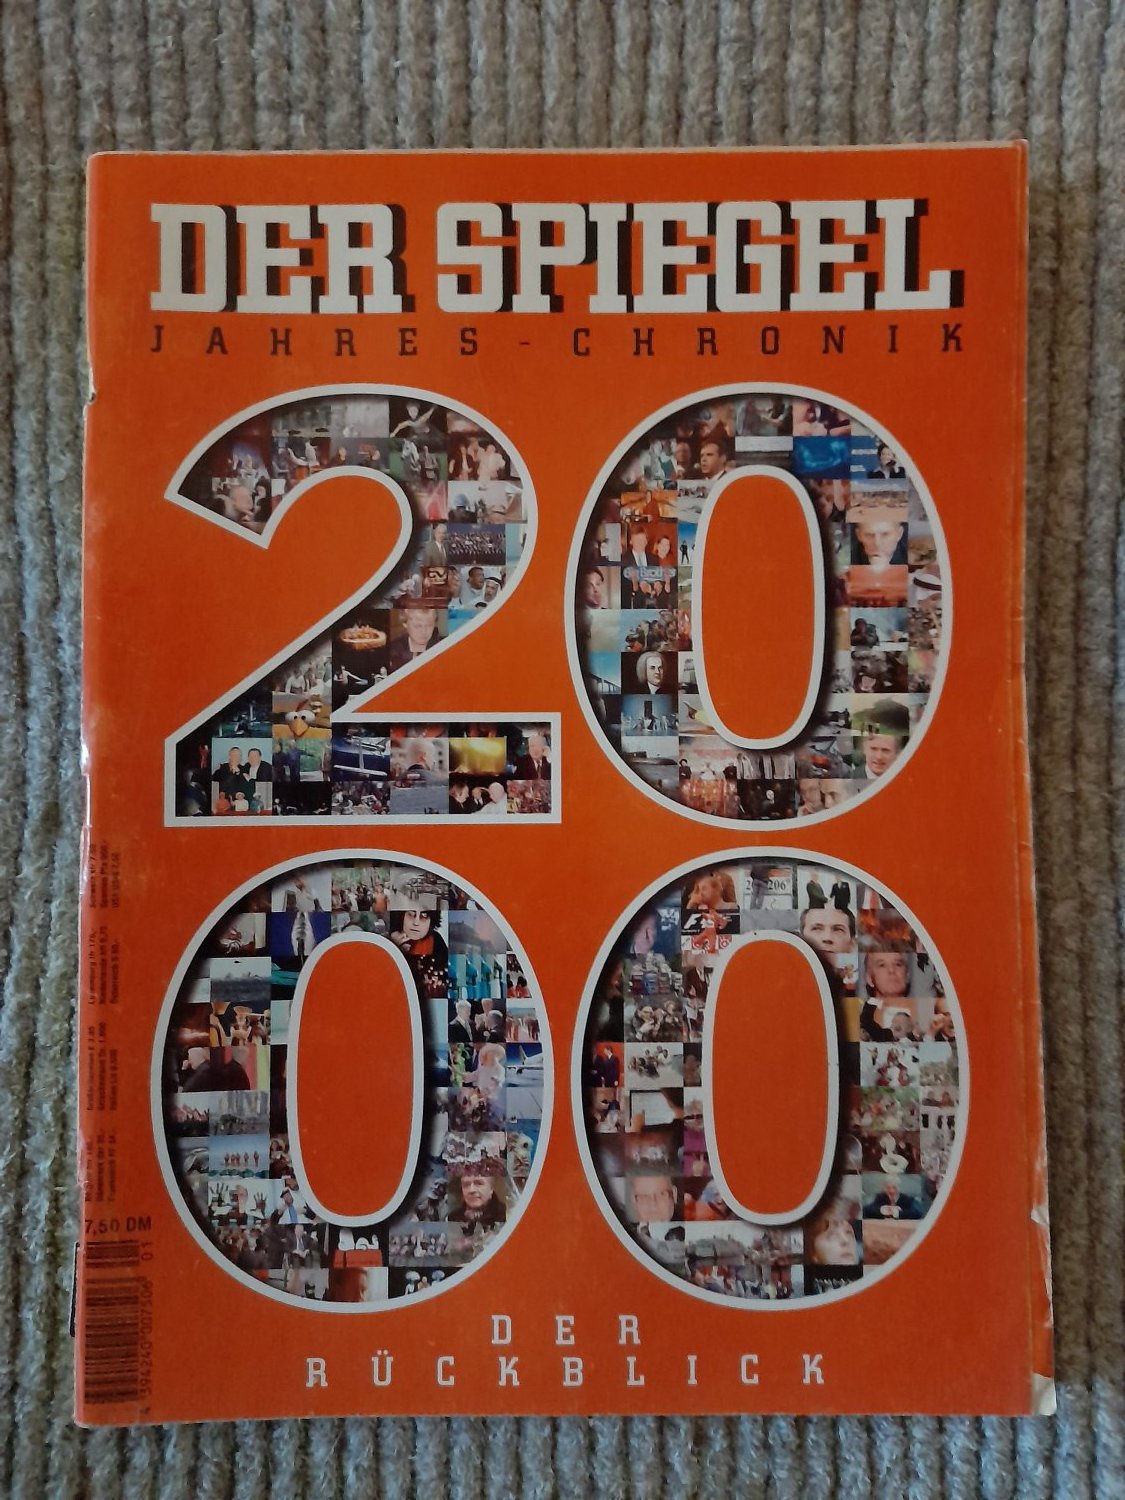 Der Spiegel Jahres-Chronik 2000 Der Rückblick“ – Buch gebraucht kaufen –  A02DVQKv01ZZa